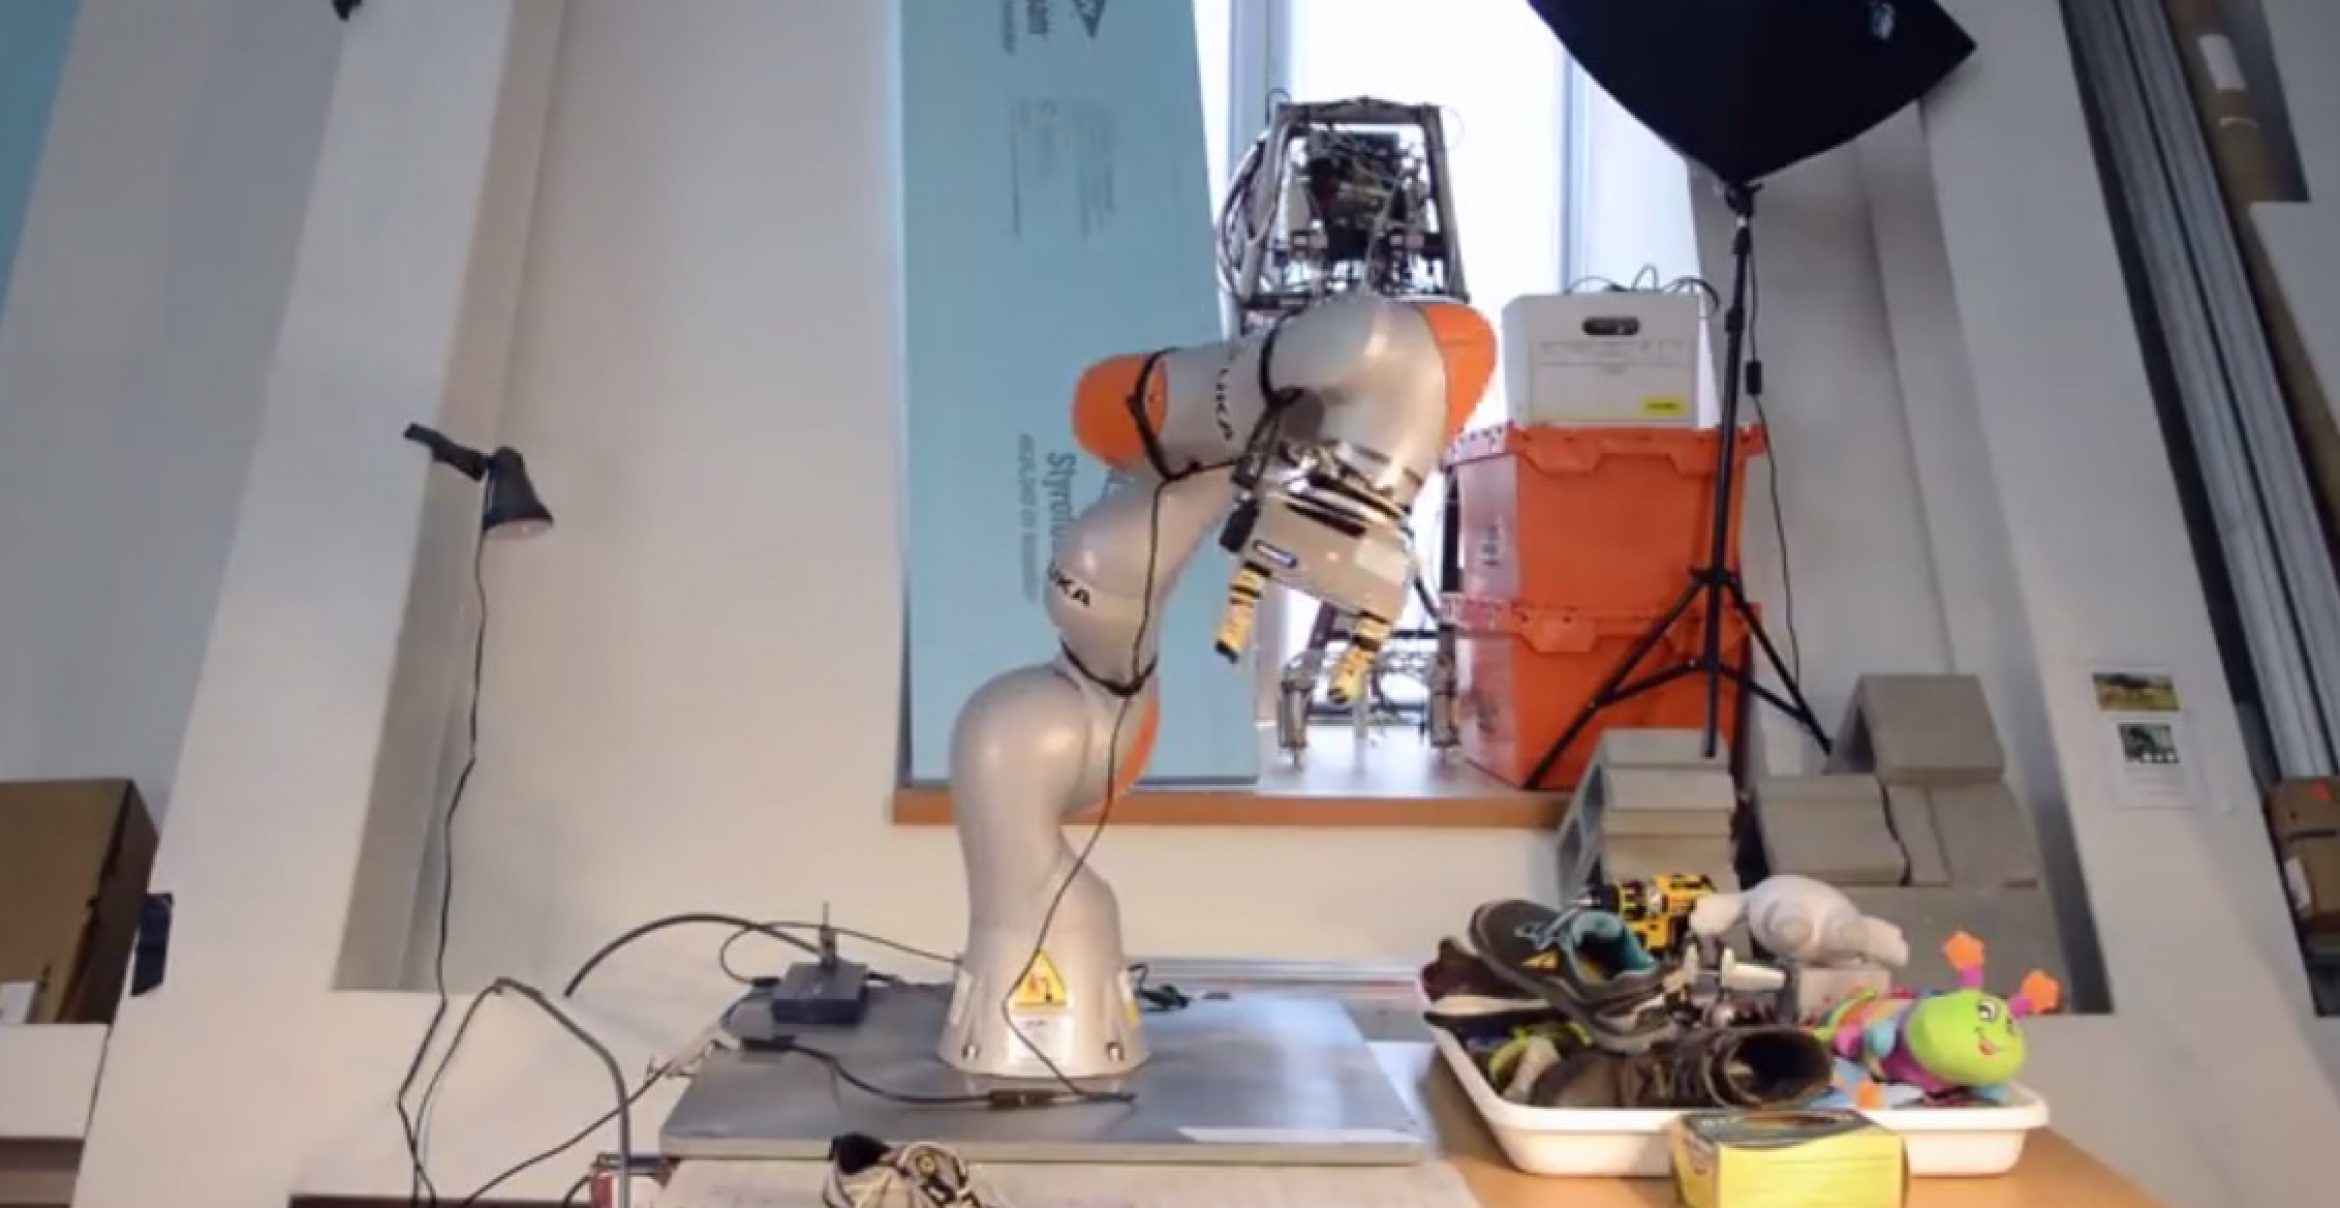 Dieser Roboter lernt von selbst, welche Objekte er sieht und wie man sie benutzt